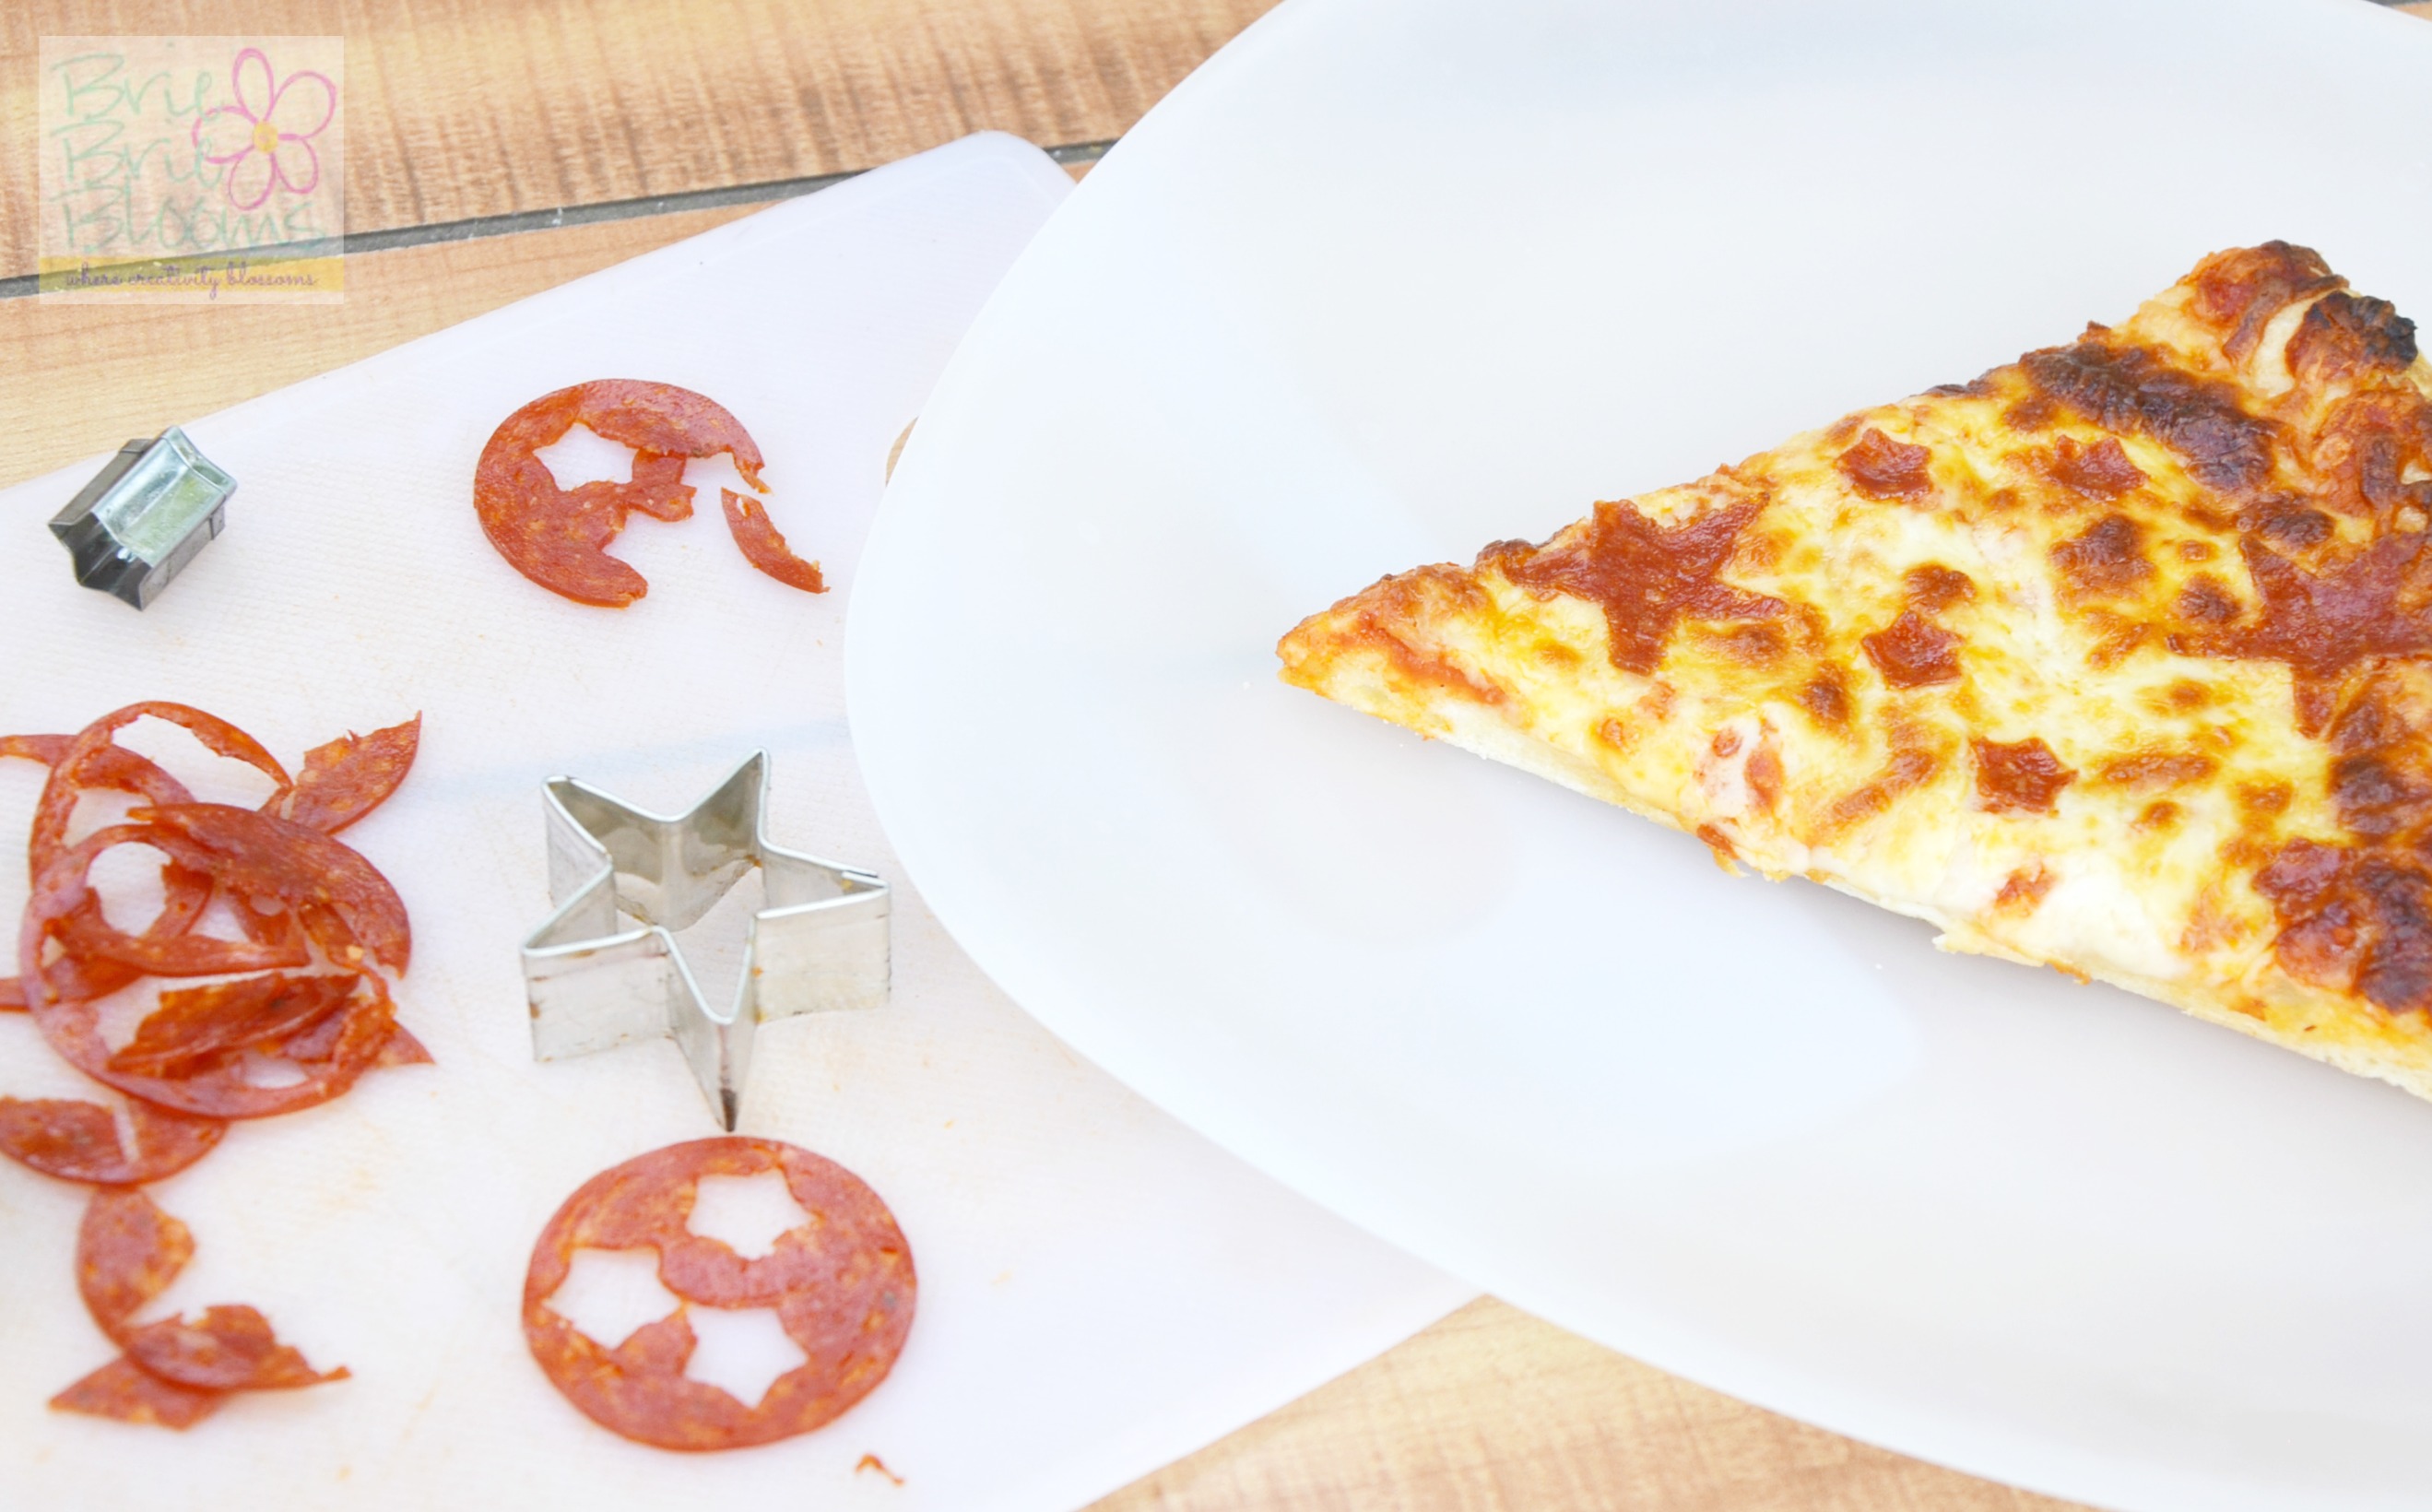 Design-a-Pizza-kid-friendly-slice